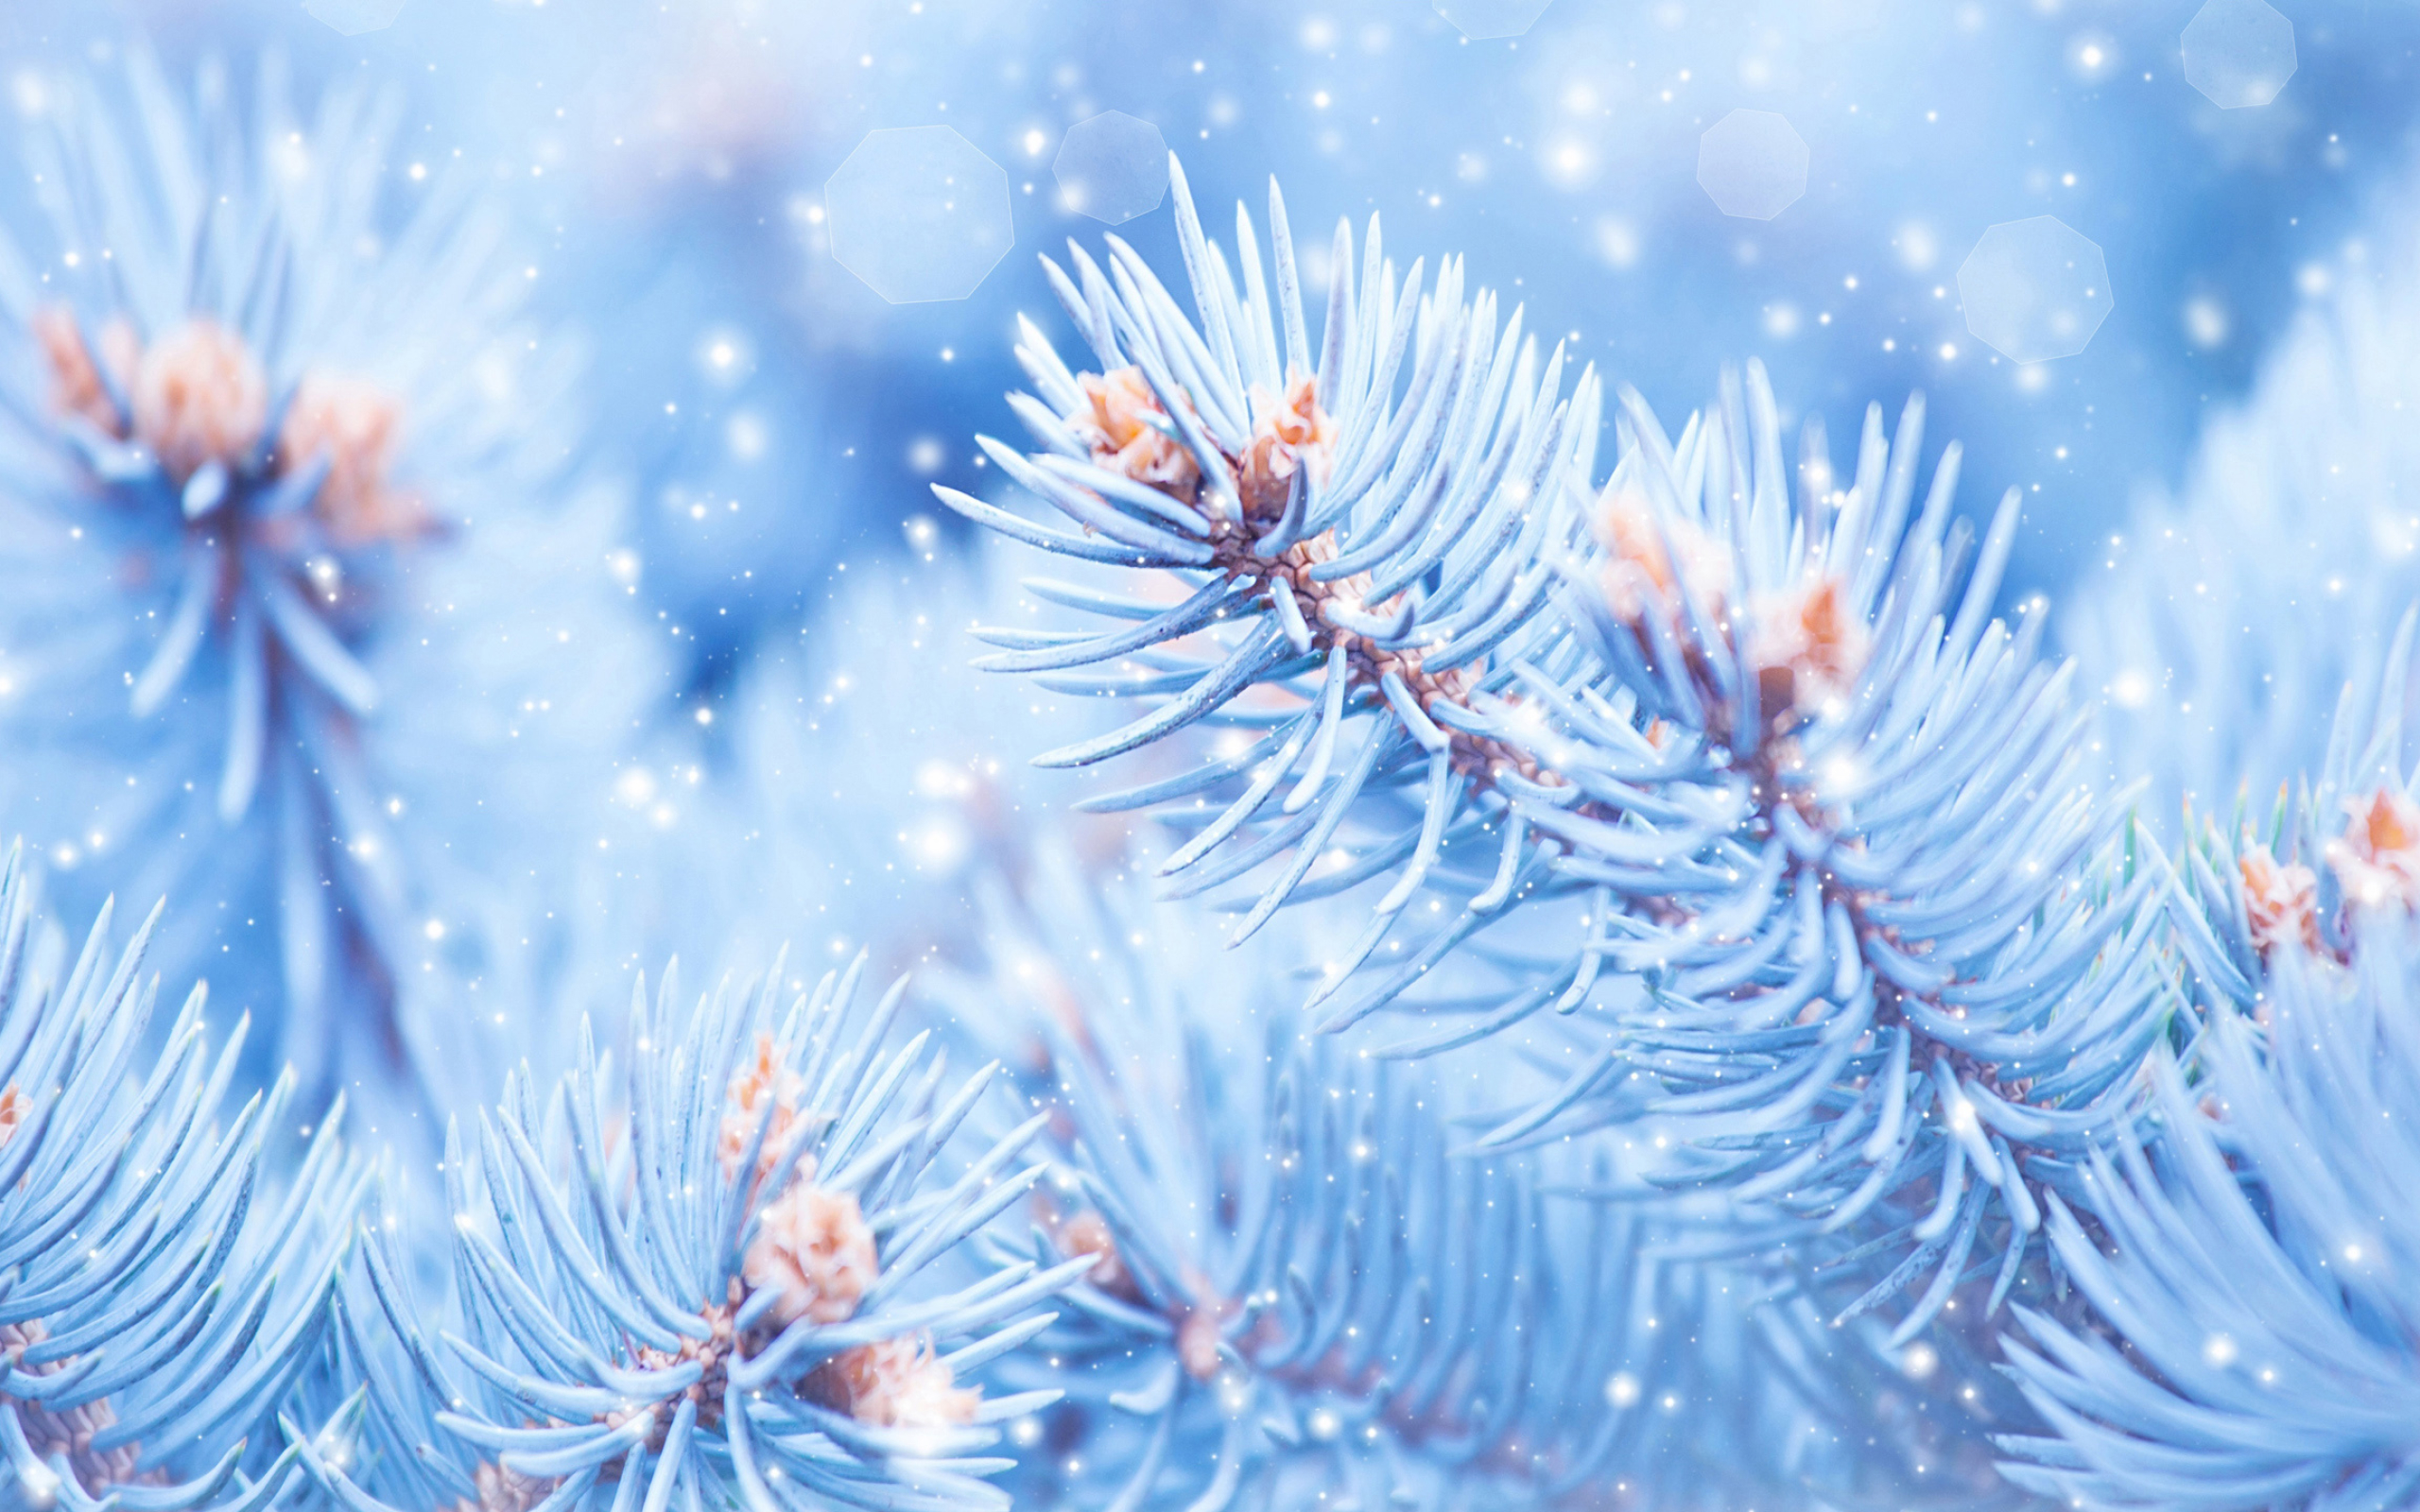 Winter desktop wallpapers, 4K Ultra HD, Snow-covered scenery, Frosty landscapes, 2560x1600 HD Desktop